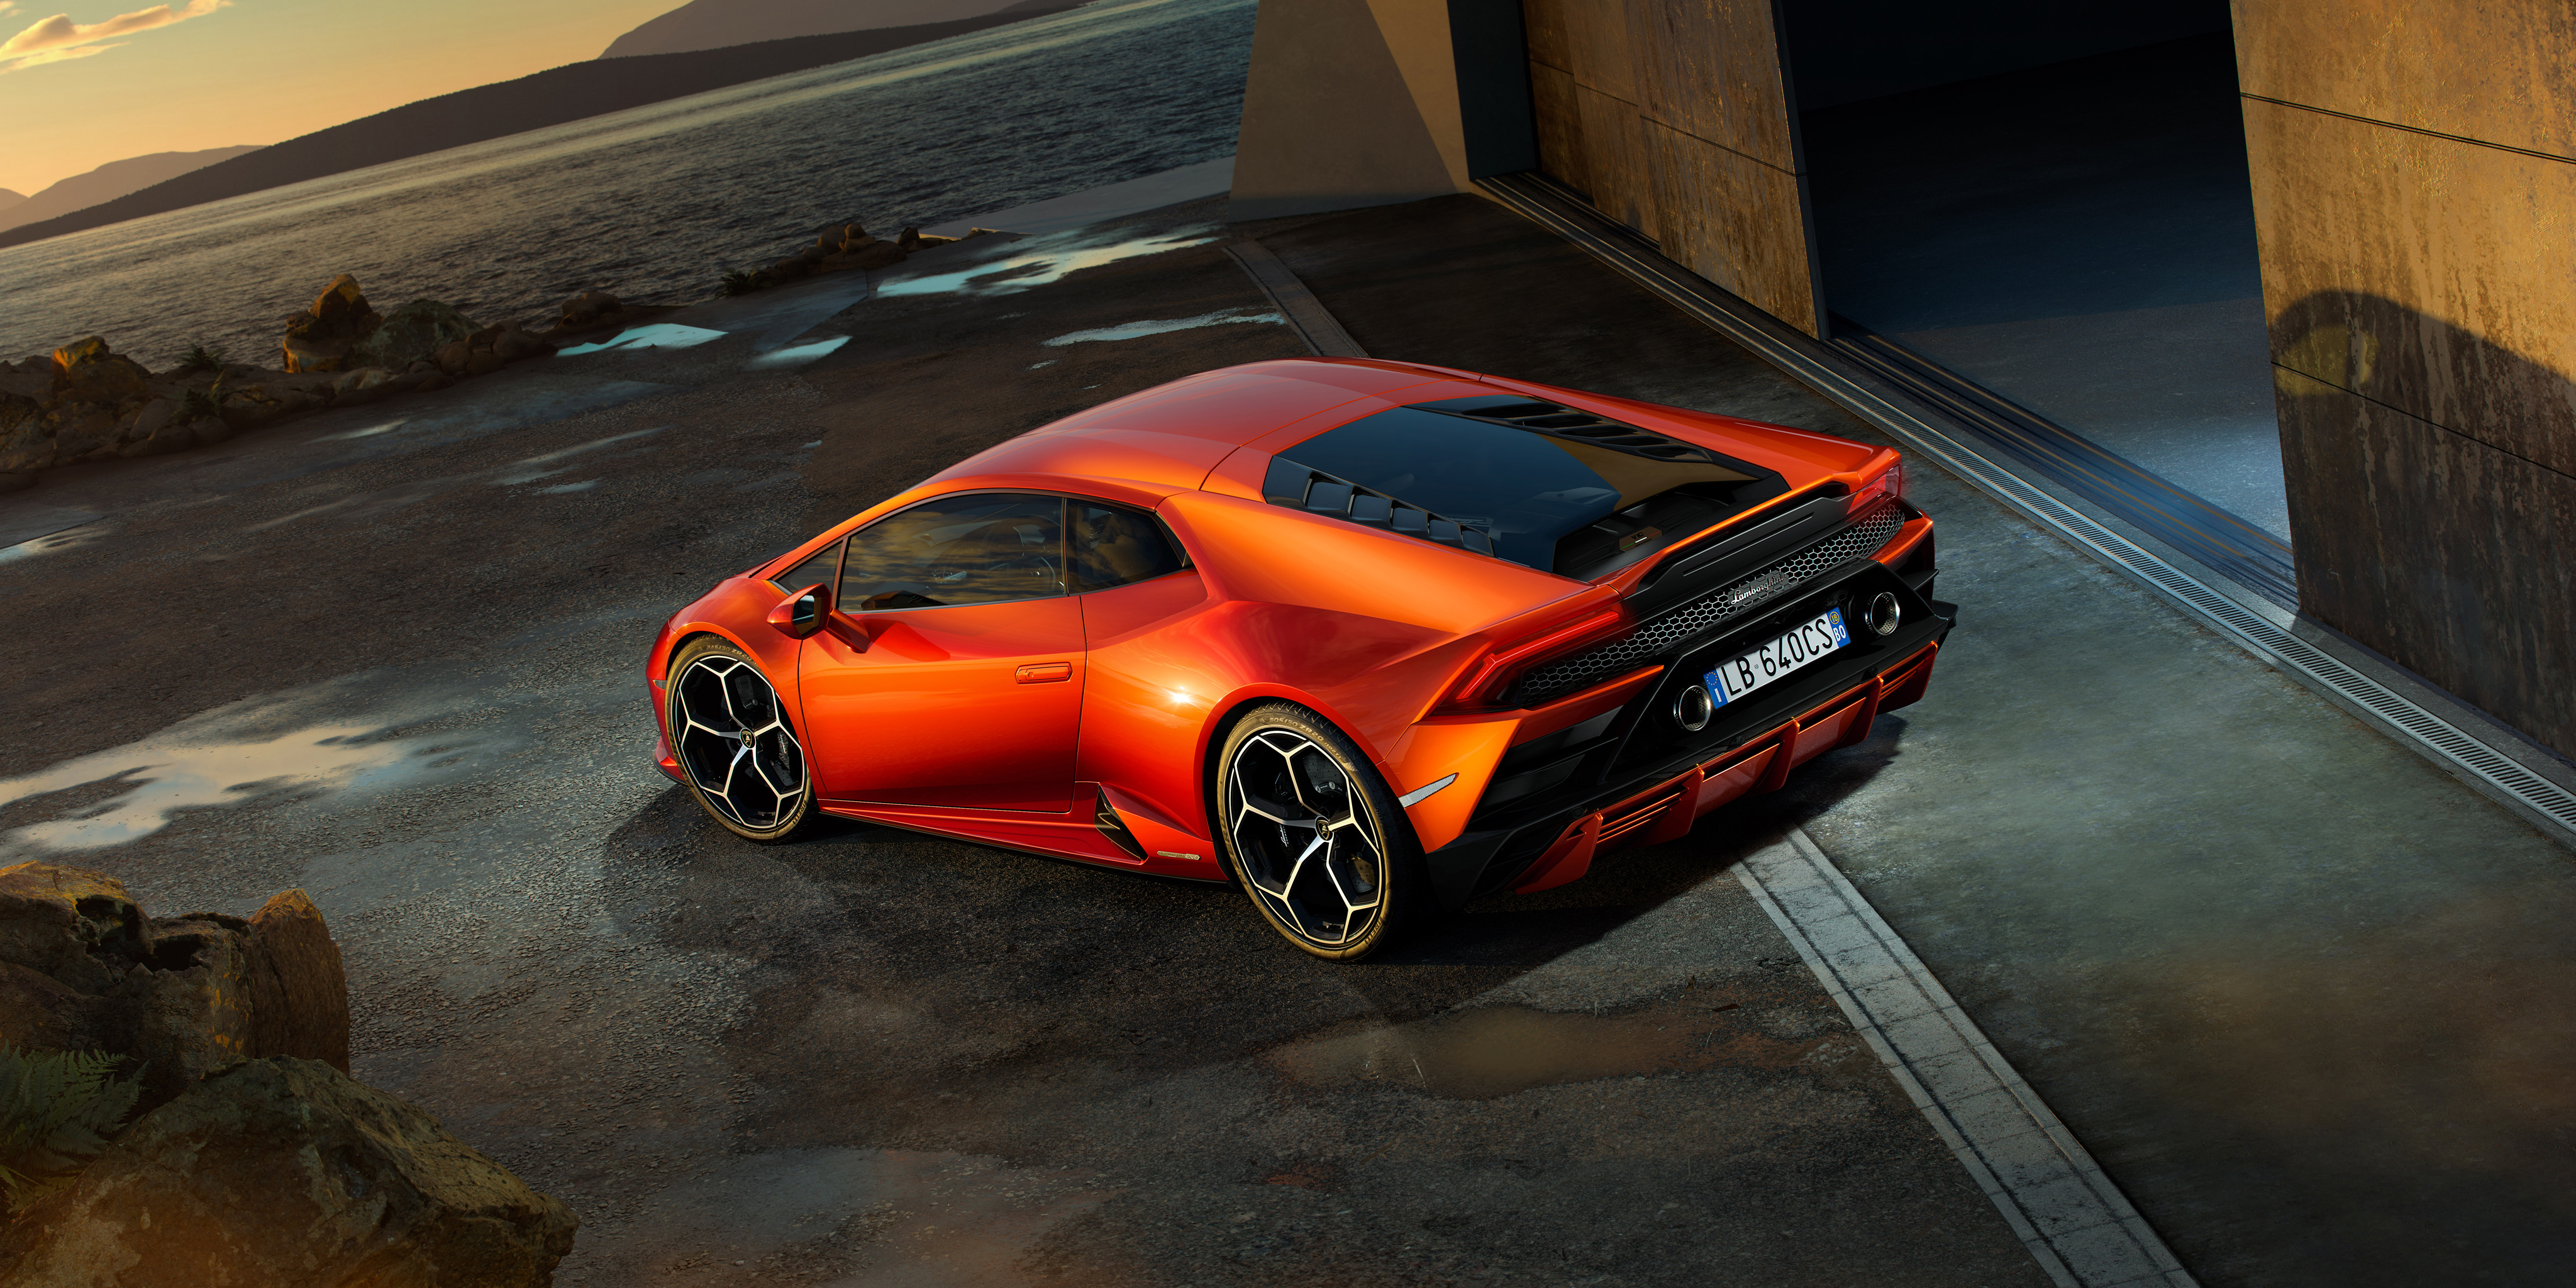 Lamborghini Huracan EVO 2019 Rear 4k, HD Cars, 4k ...